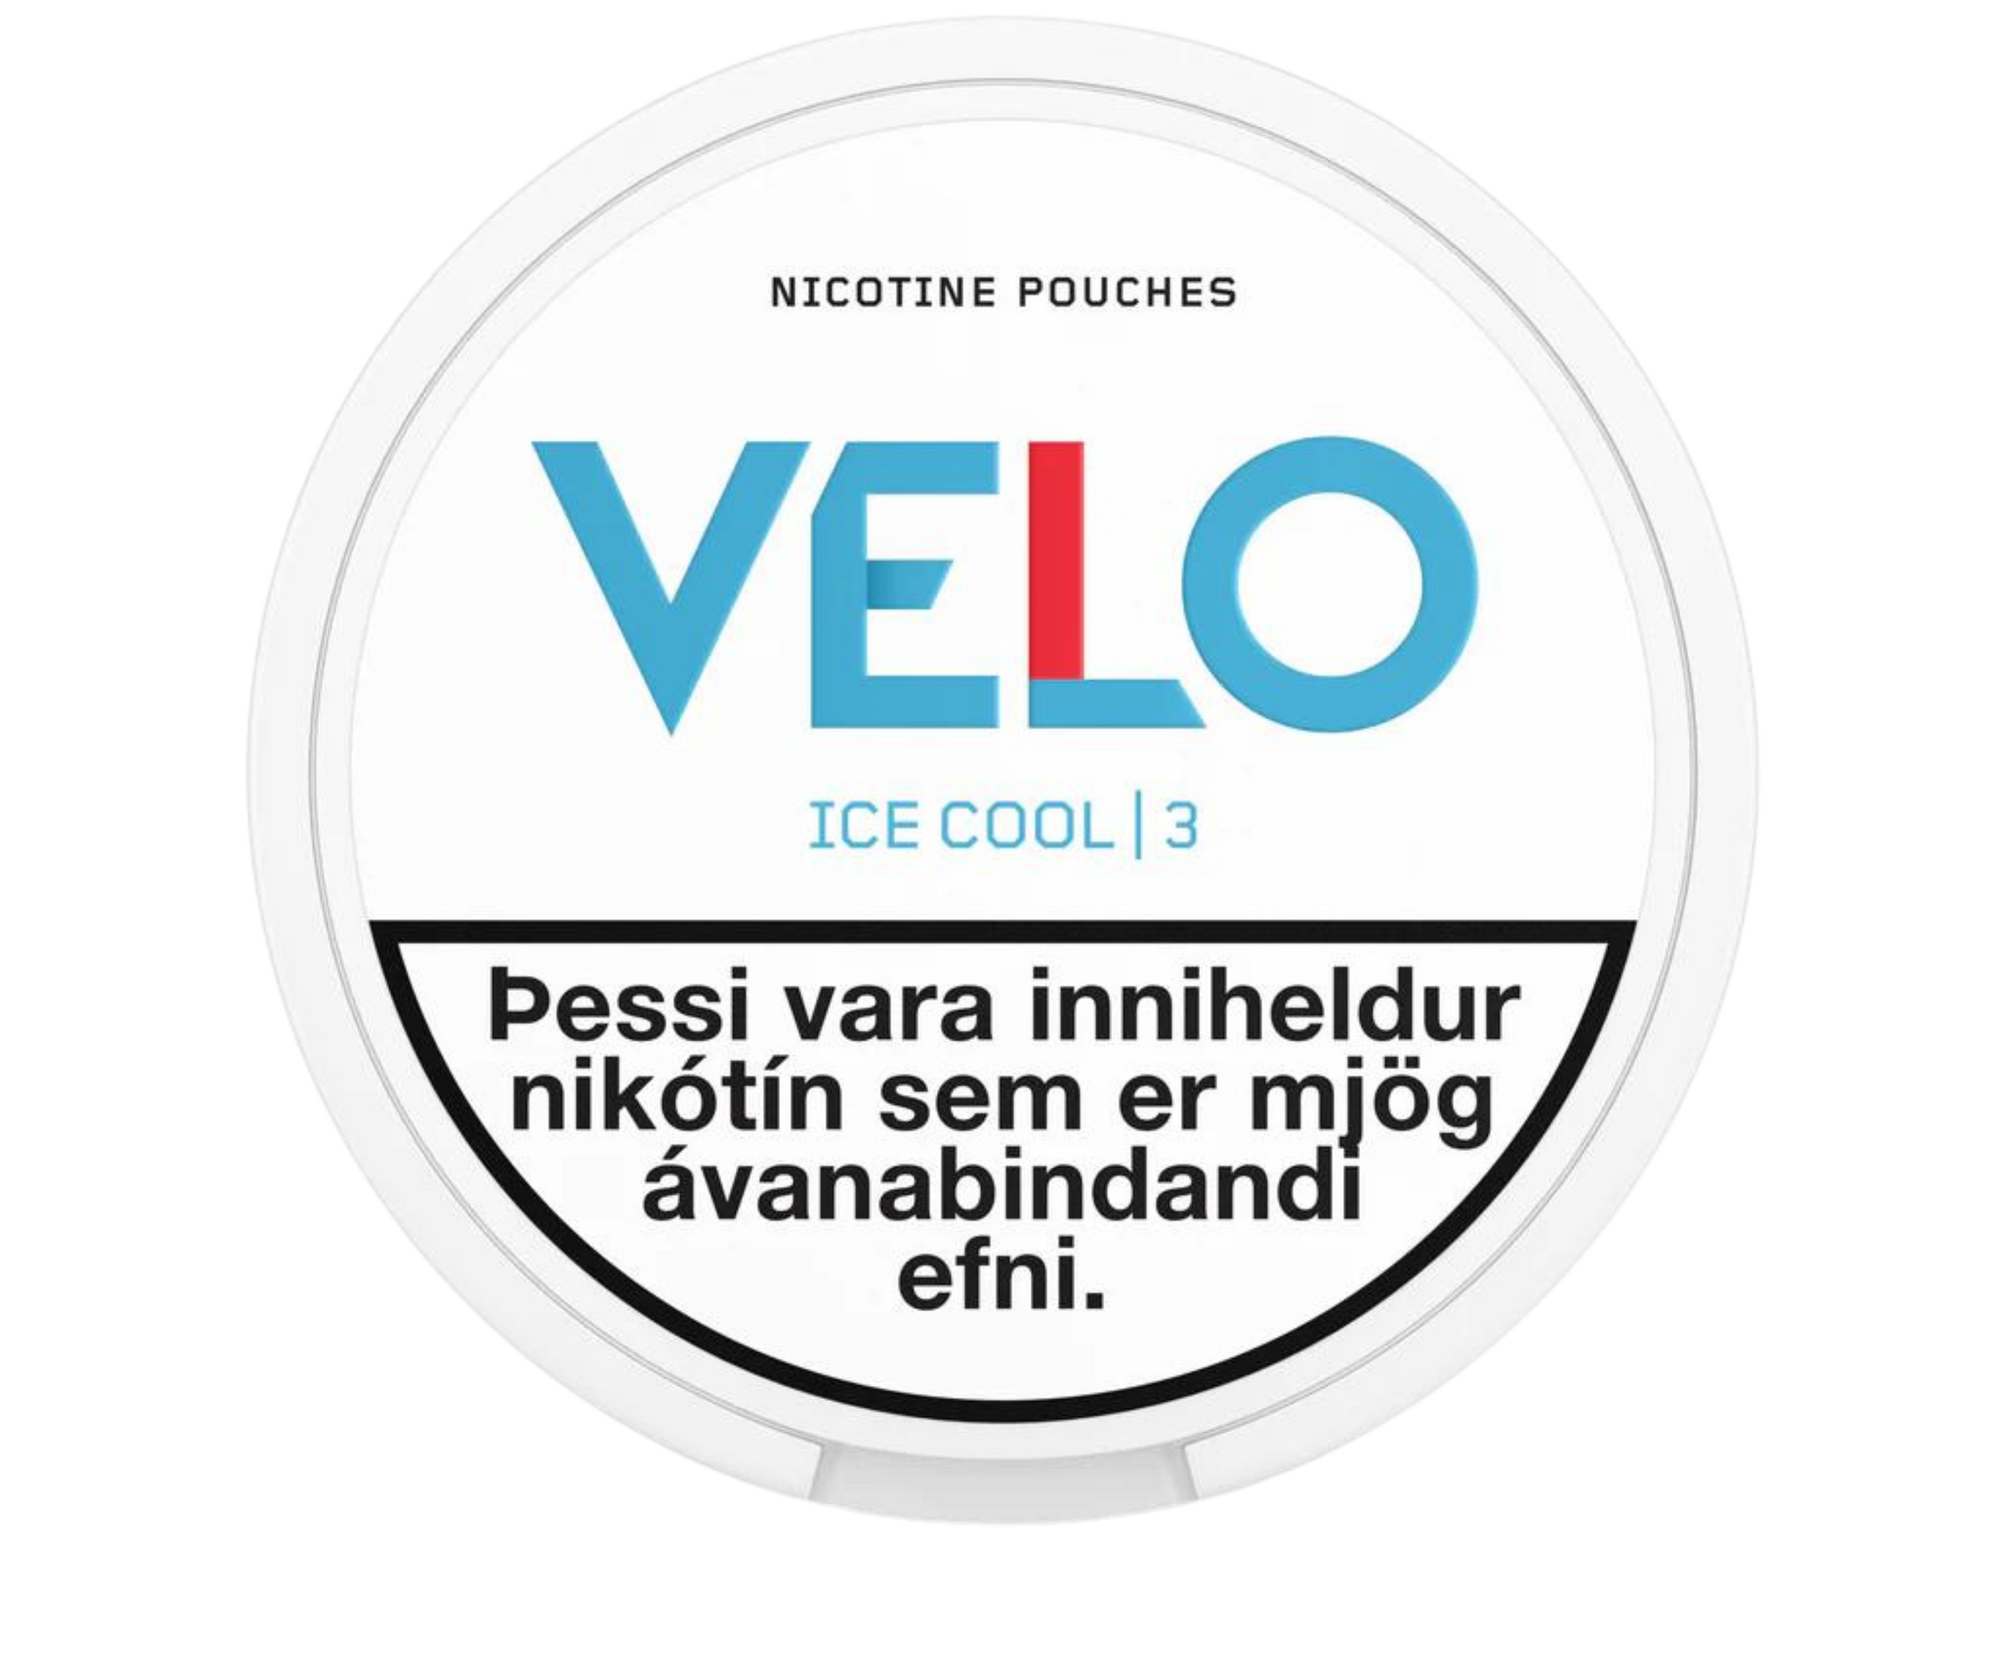 VELO Ice Cool - Nammi.net